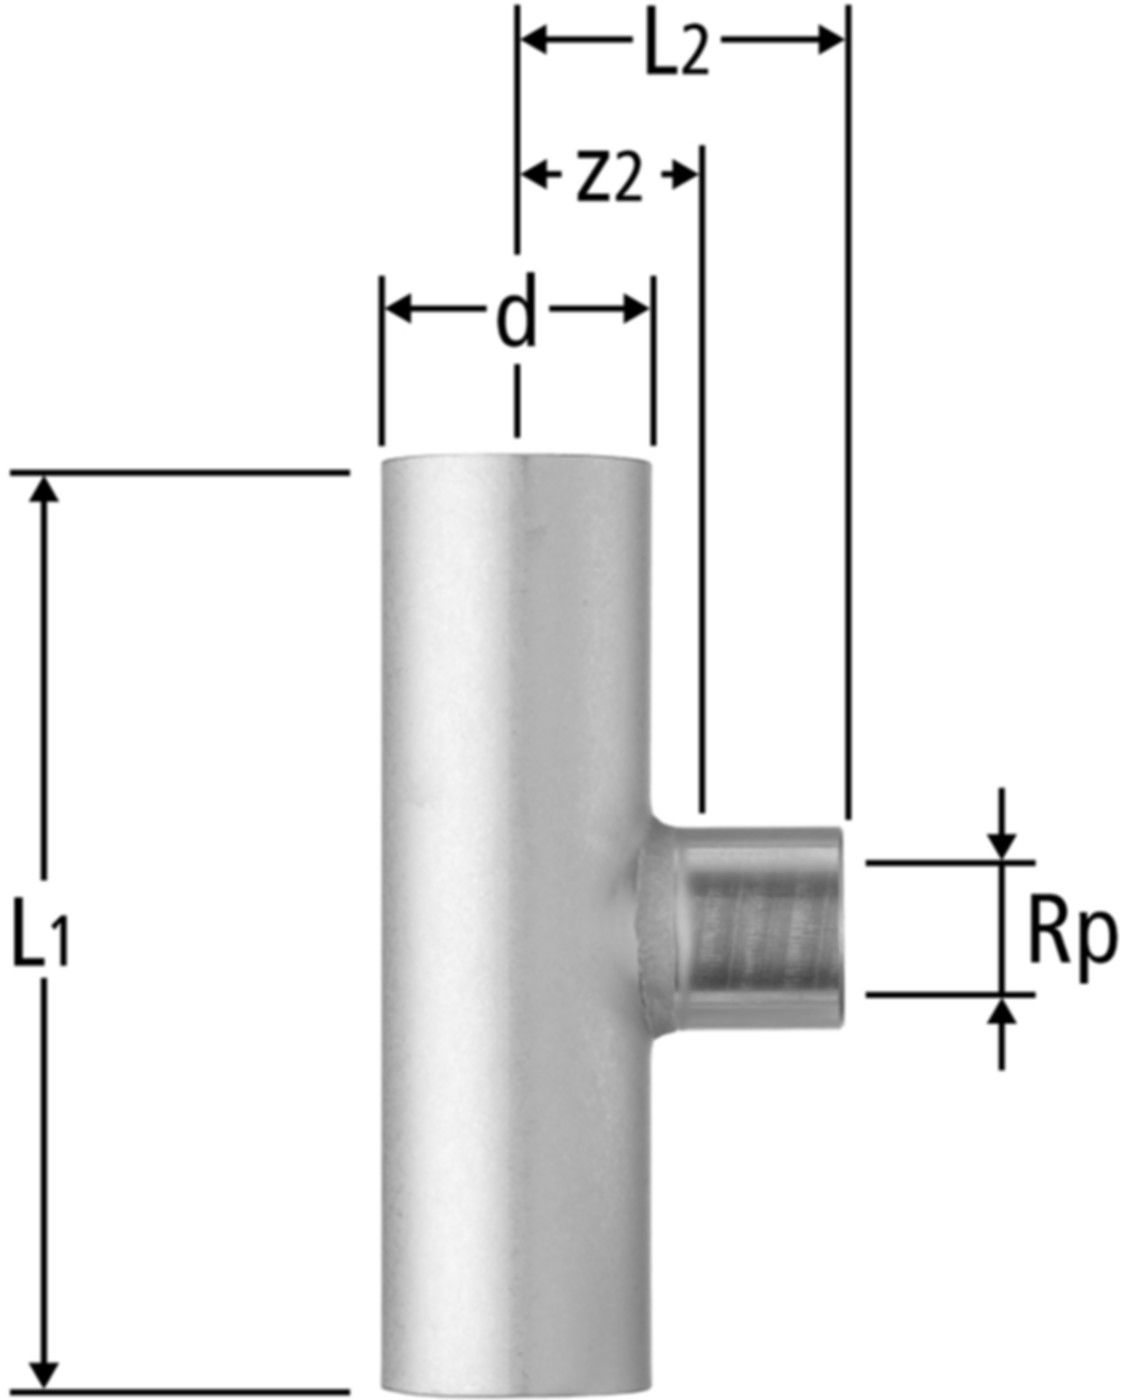 T-Stück m/IG 42 x 1/2" x 42 mm 80014.27 mit Einsteckende - Nussbaum-Optipress-Inox-Fittings